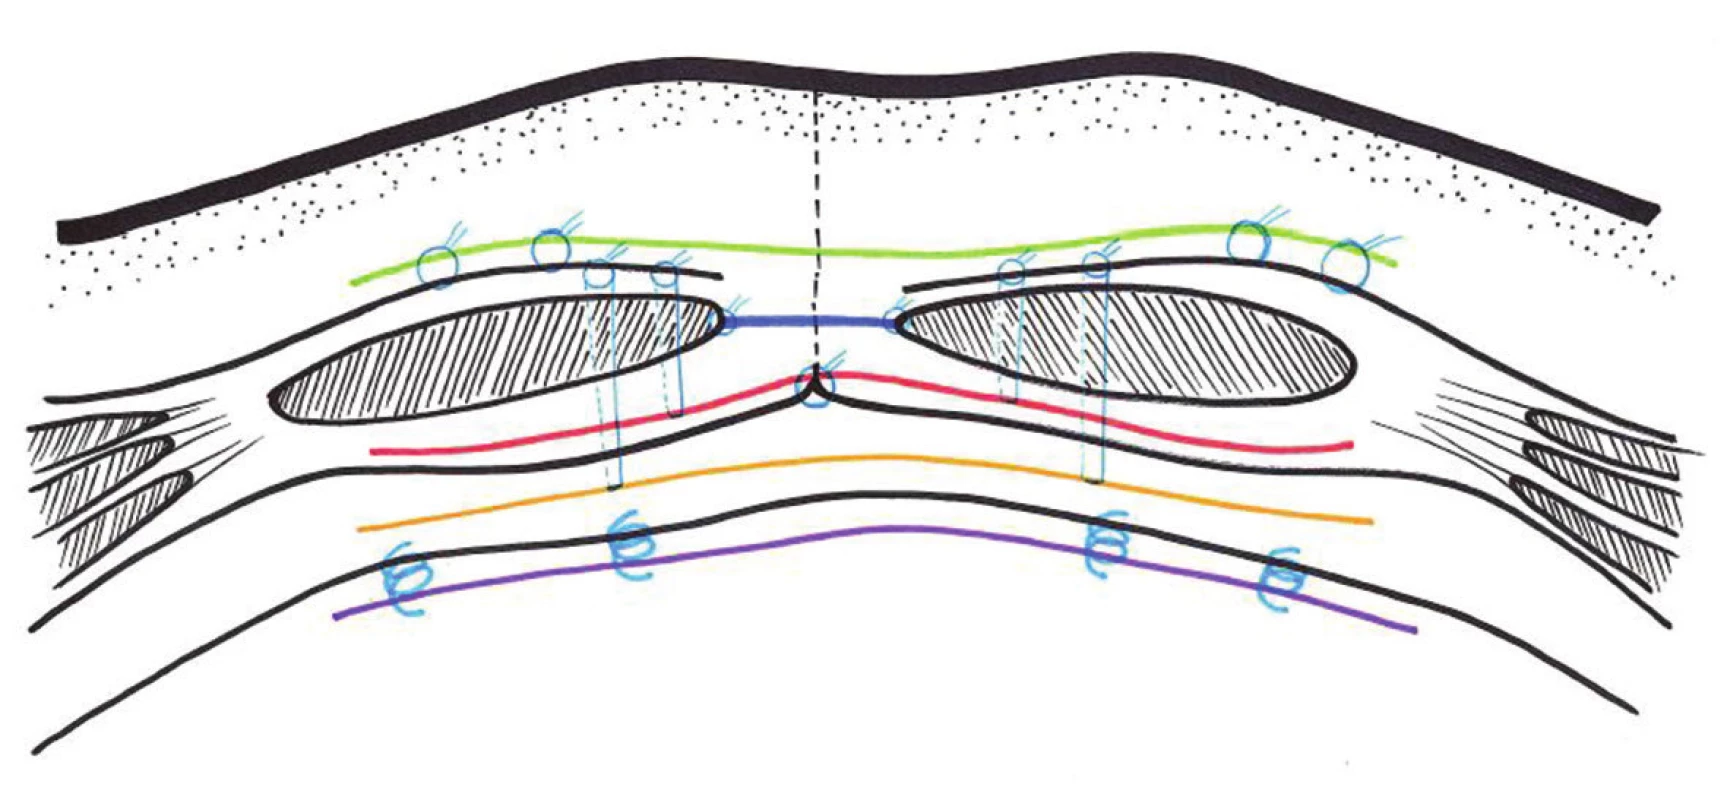 Schéma pozice a kotvení síťky při plastikách:
Onlay (zeleně), inlay (modře), underlay – retromuskulárně (červeně), sublay – preperitoneálně (žlutě), IPOM (fialově)
Fig. 12: Scheme of the position and anchoring of the mesh in hernioplasty:
Onlay (green), inlay (blue), underlay-retromuscular (red), sublay-preperitoneal (yellow), IPOM (purple) (red), sublay-preperitoneal (yellow), IPOM (purple)